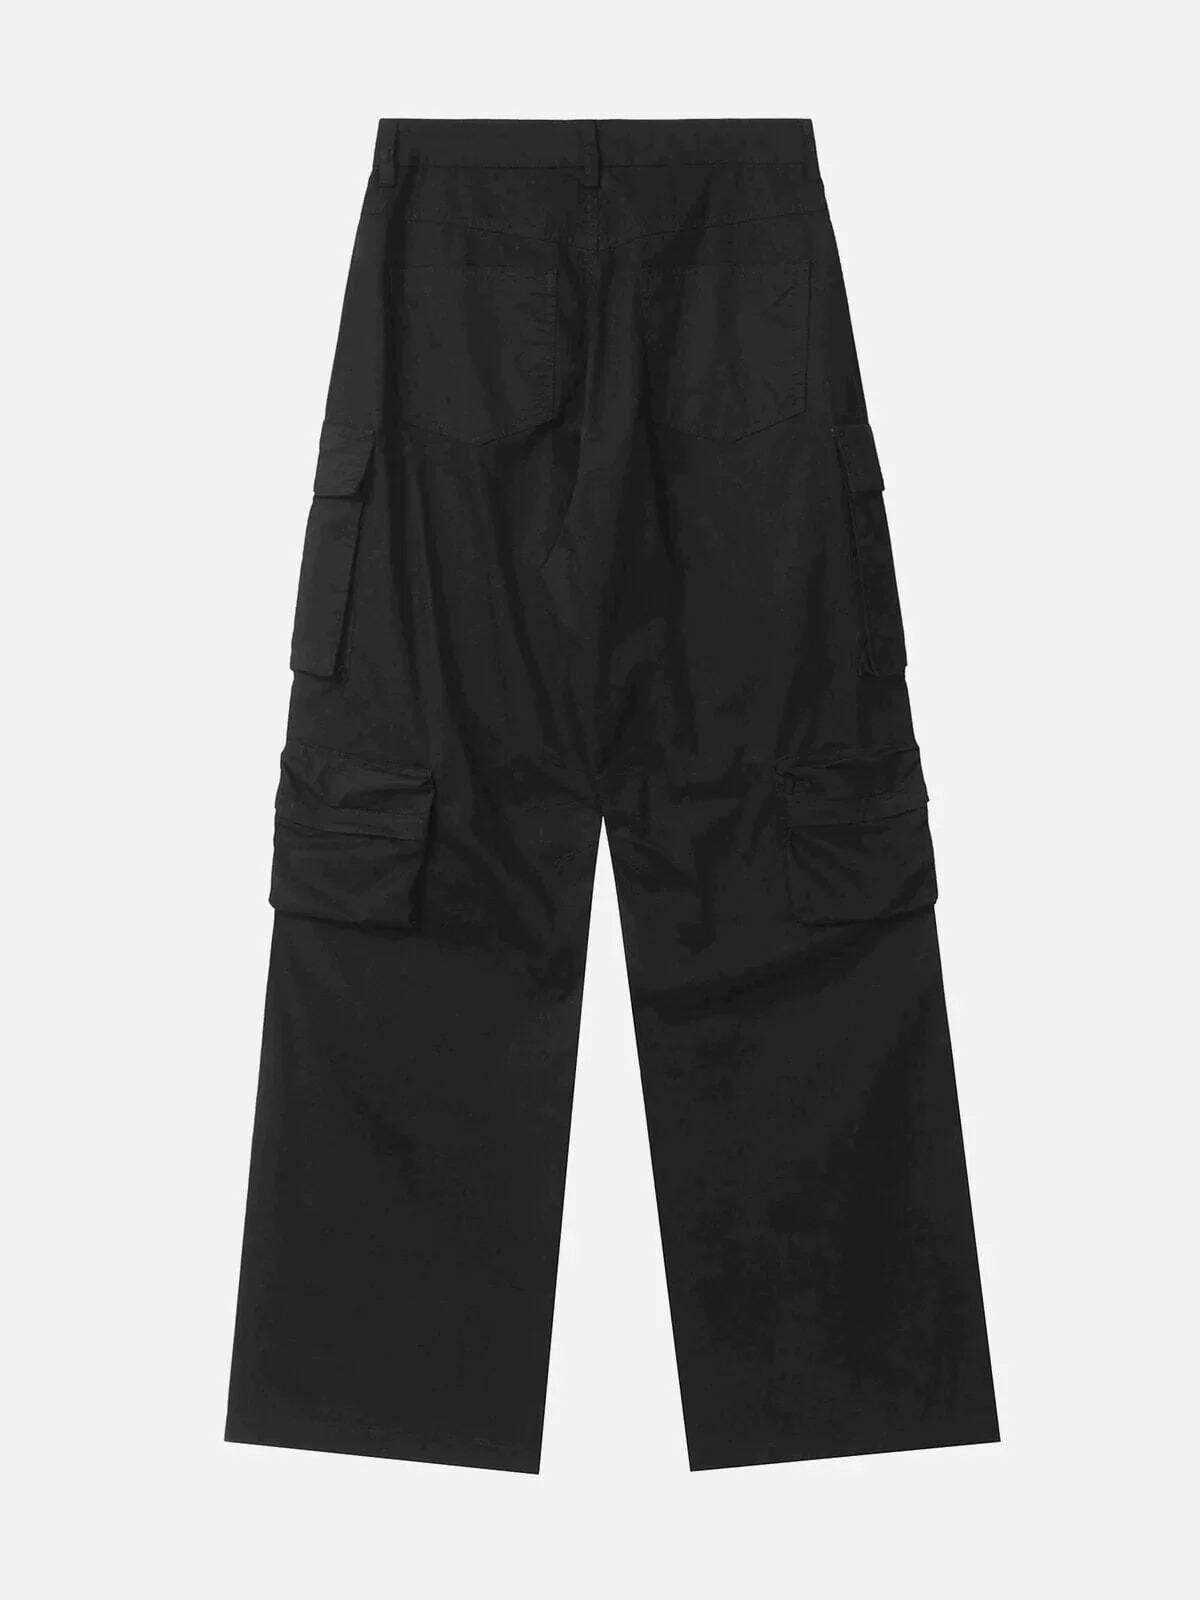 loose fit solid color pants effortlessly chic & versatile 6123